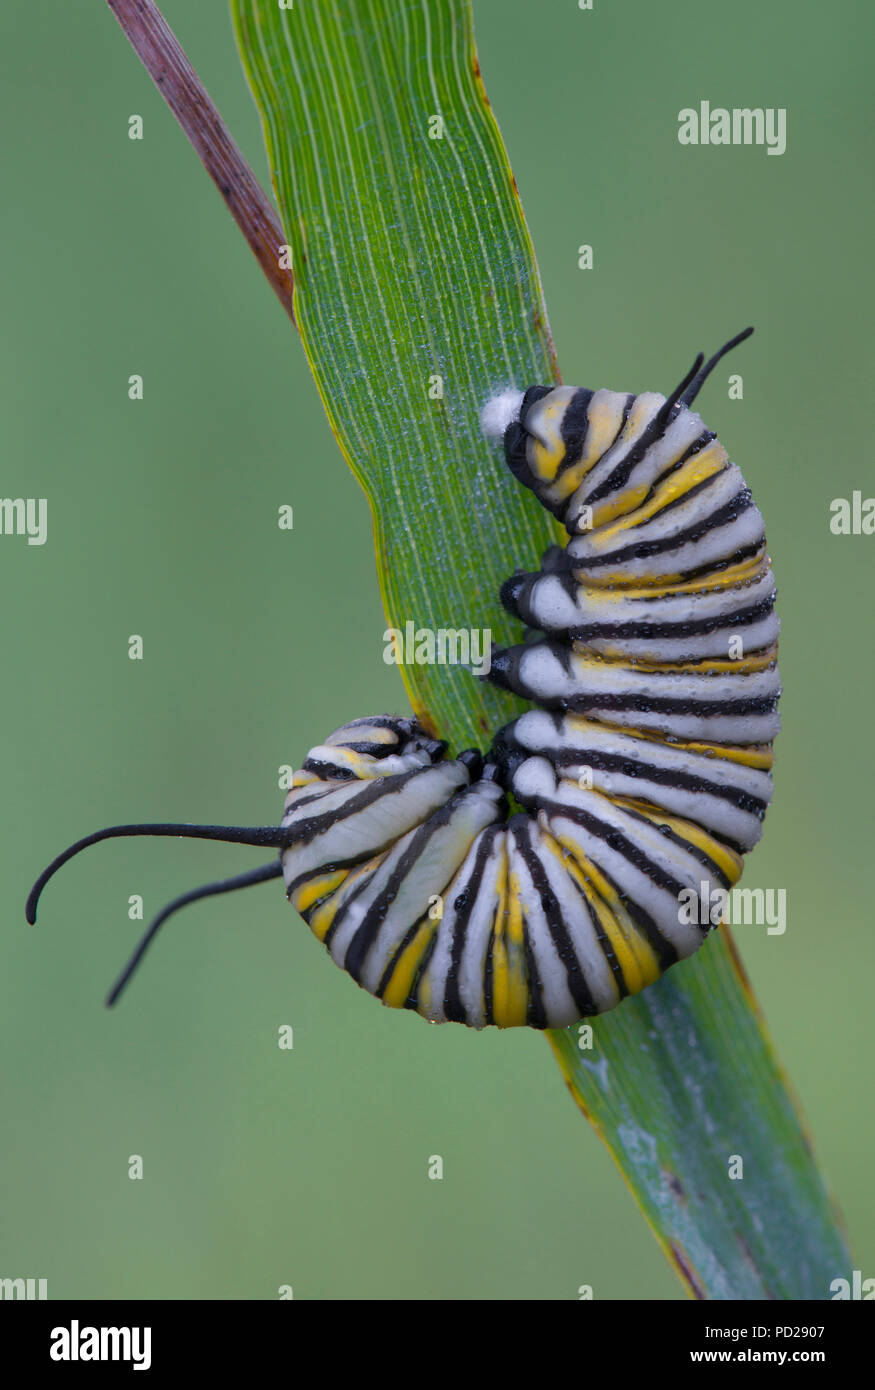 La chenille du papillon monarque (Danaus plexippus), prêts à se transformer en chrysalide, Amérique du Nord, par aller Moody/Dembinsky Assoc Photo Banque D'Images